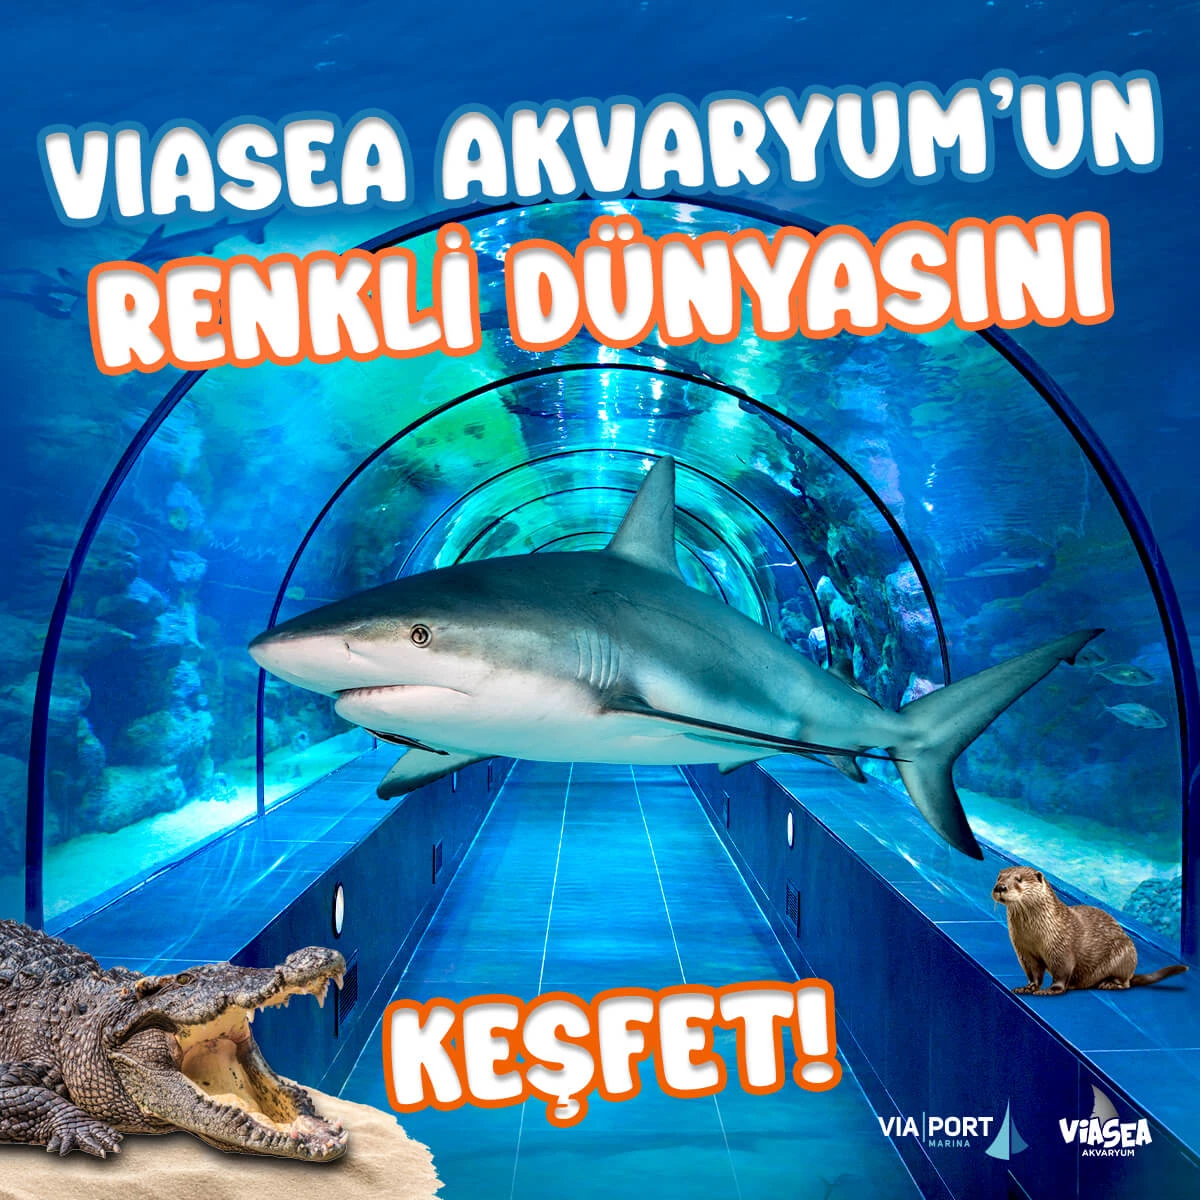 Viasea Akvaryum Bileti - 2